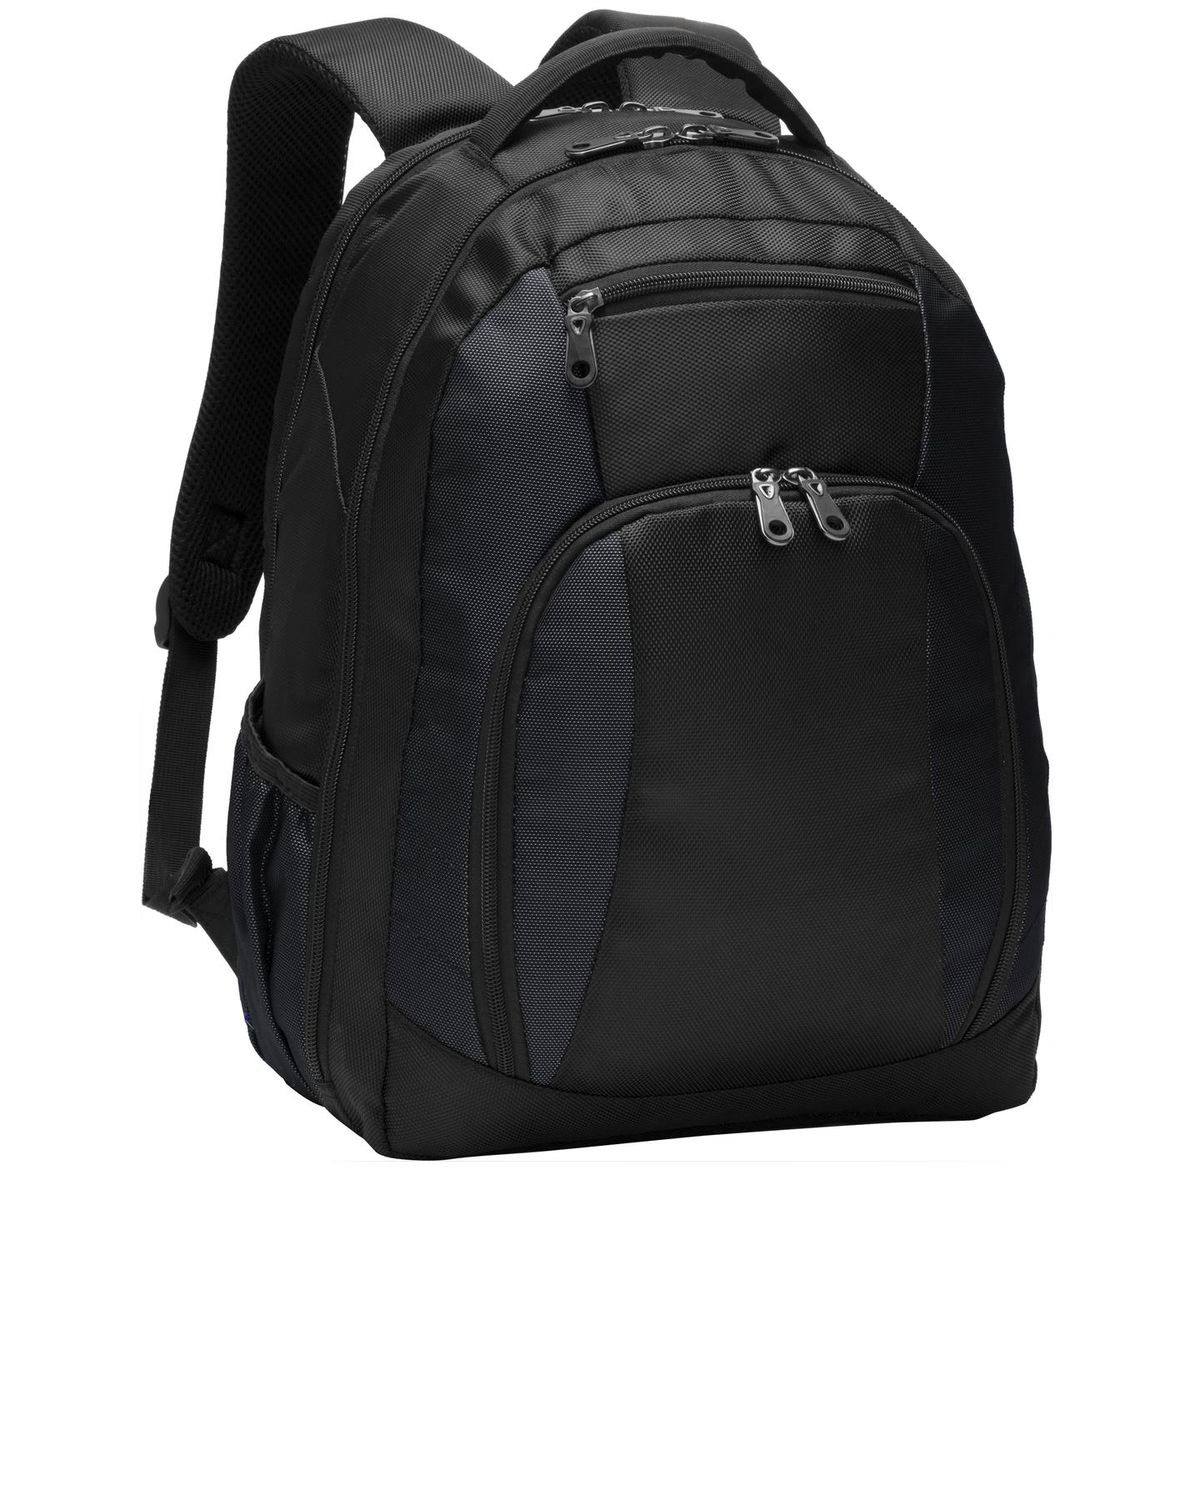 'Port Authority BG205 Commuter Backpack'